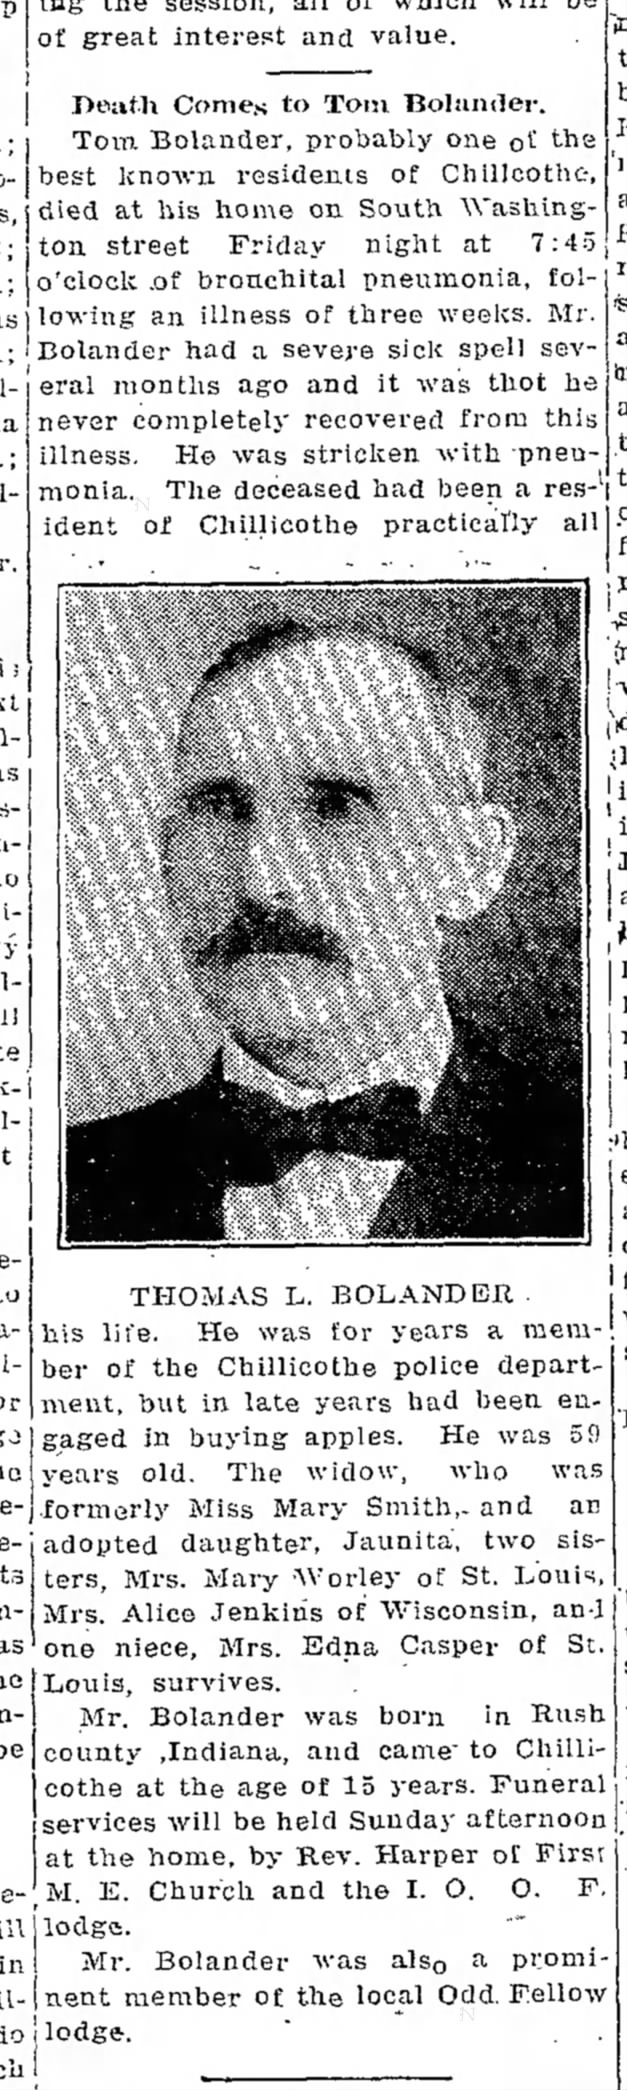 Obituary Thomas L. Bolander
